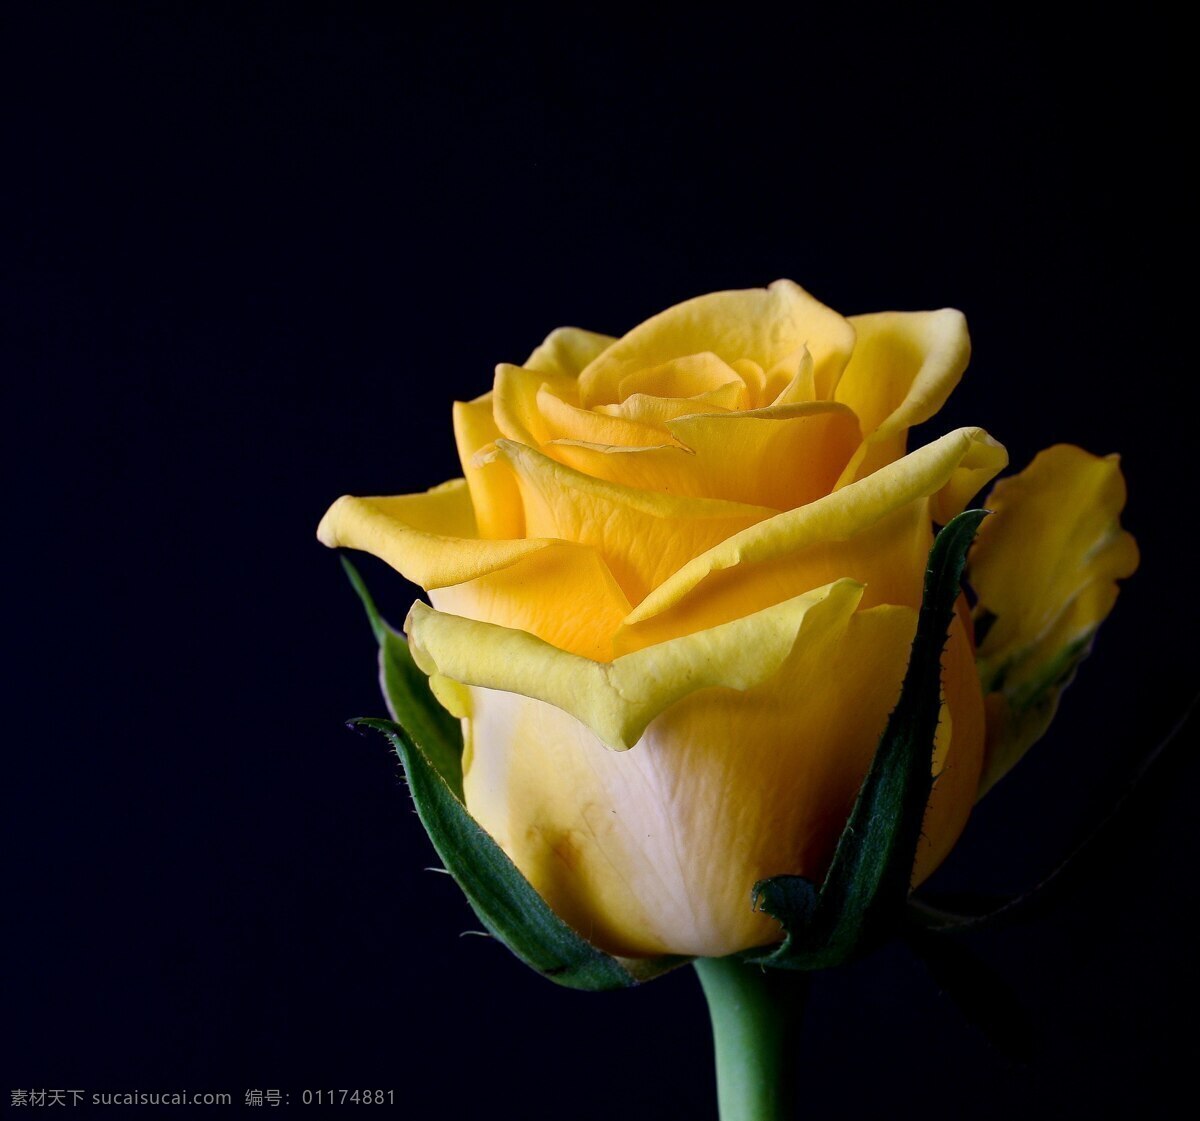 黄色玫瑰特写 鲜花 花 植物 玫瑰 自然 特写 背景 季节 礼物 爱 绽放 盛开 摄影图片 鸟语花香 生物世界 花草